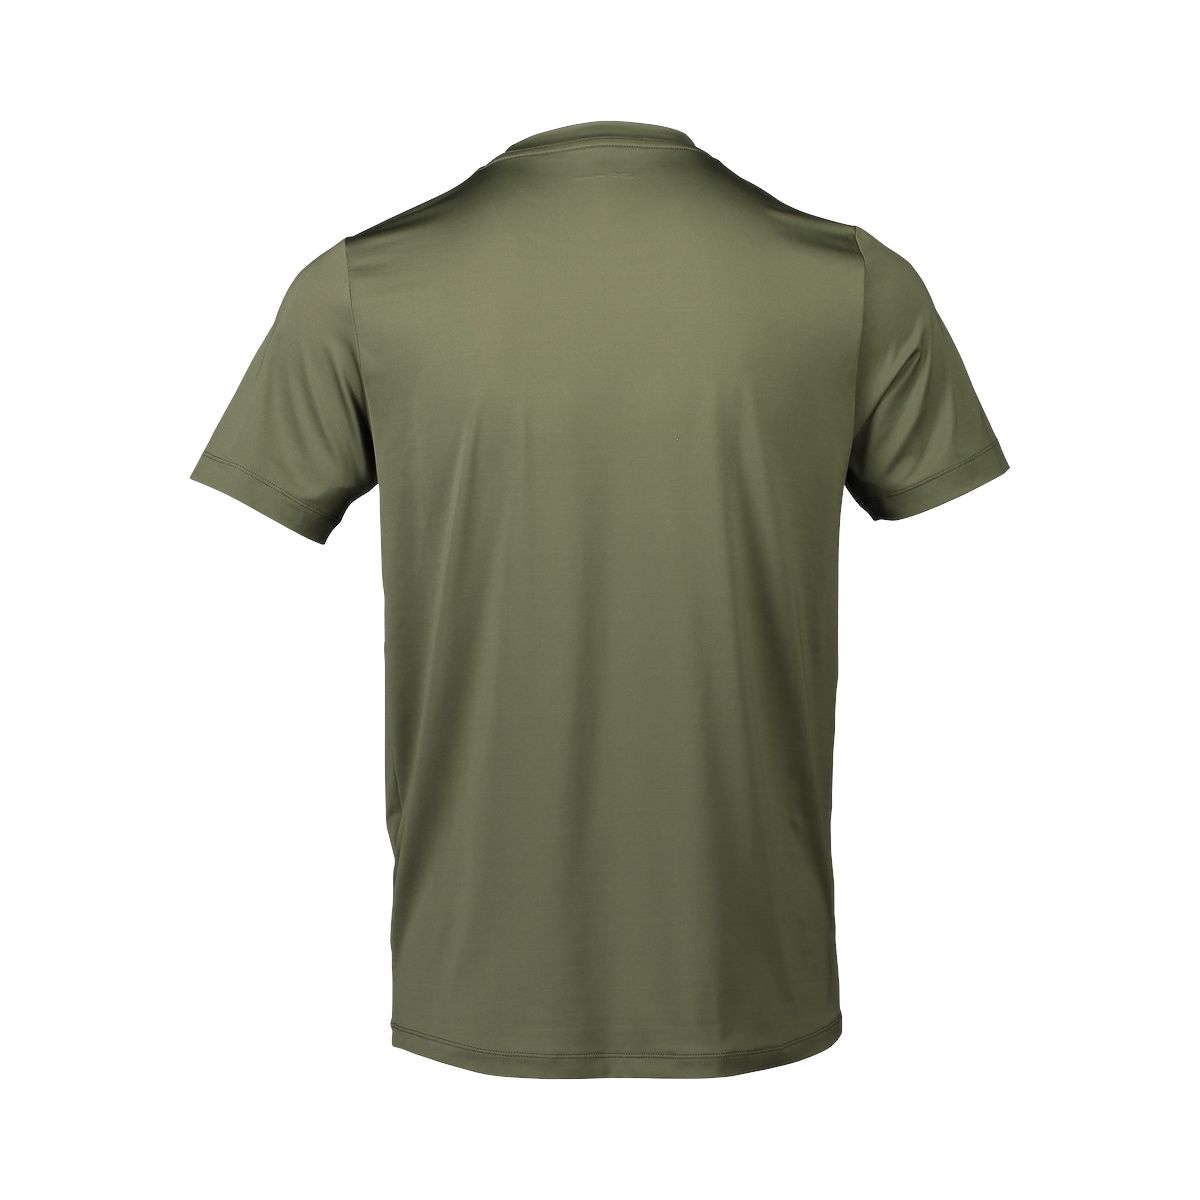 T-shirt Reform Enduro Light Uomo Epidote Green